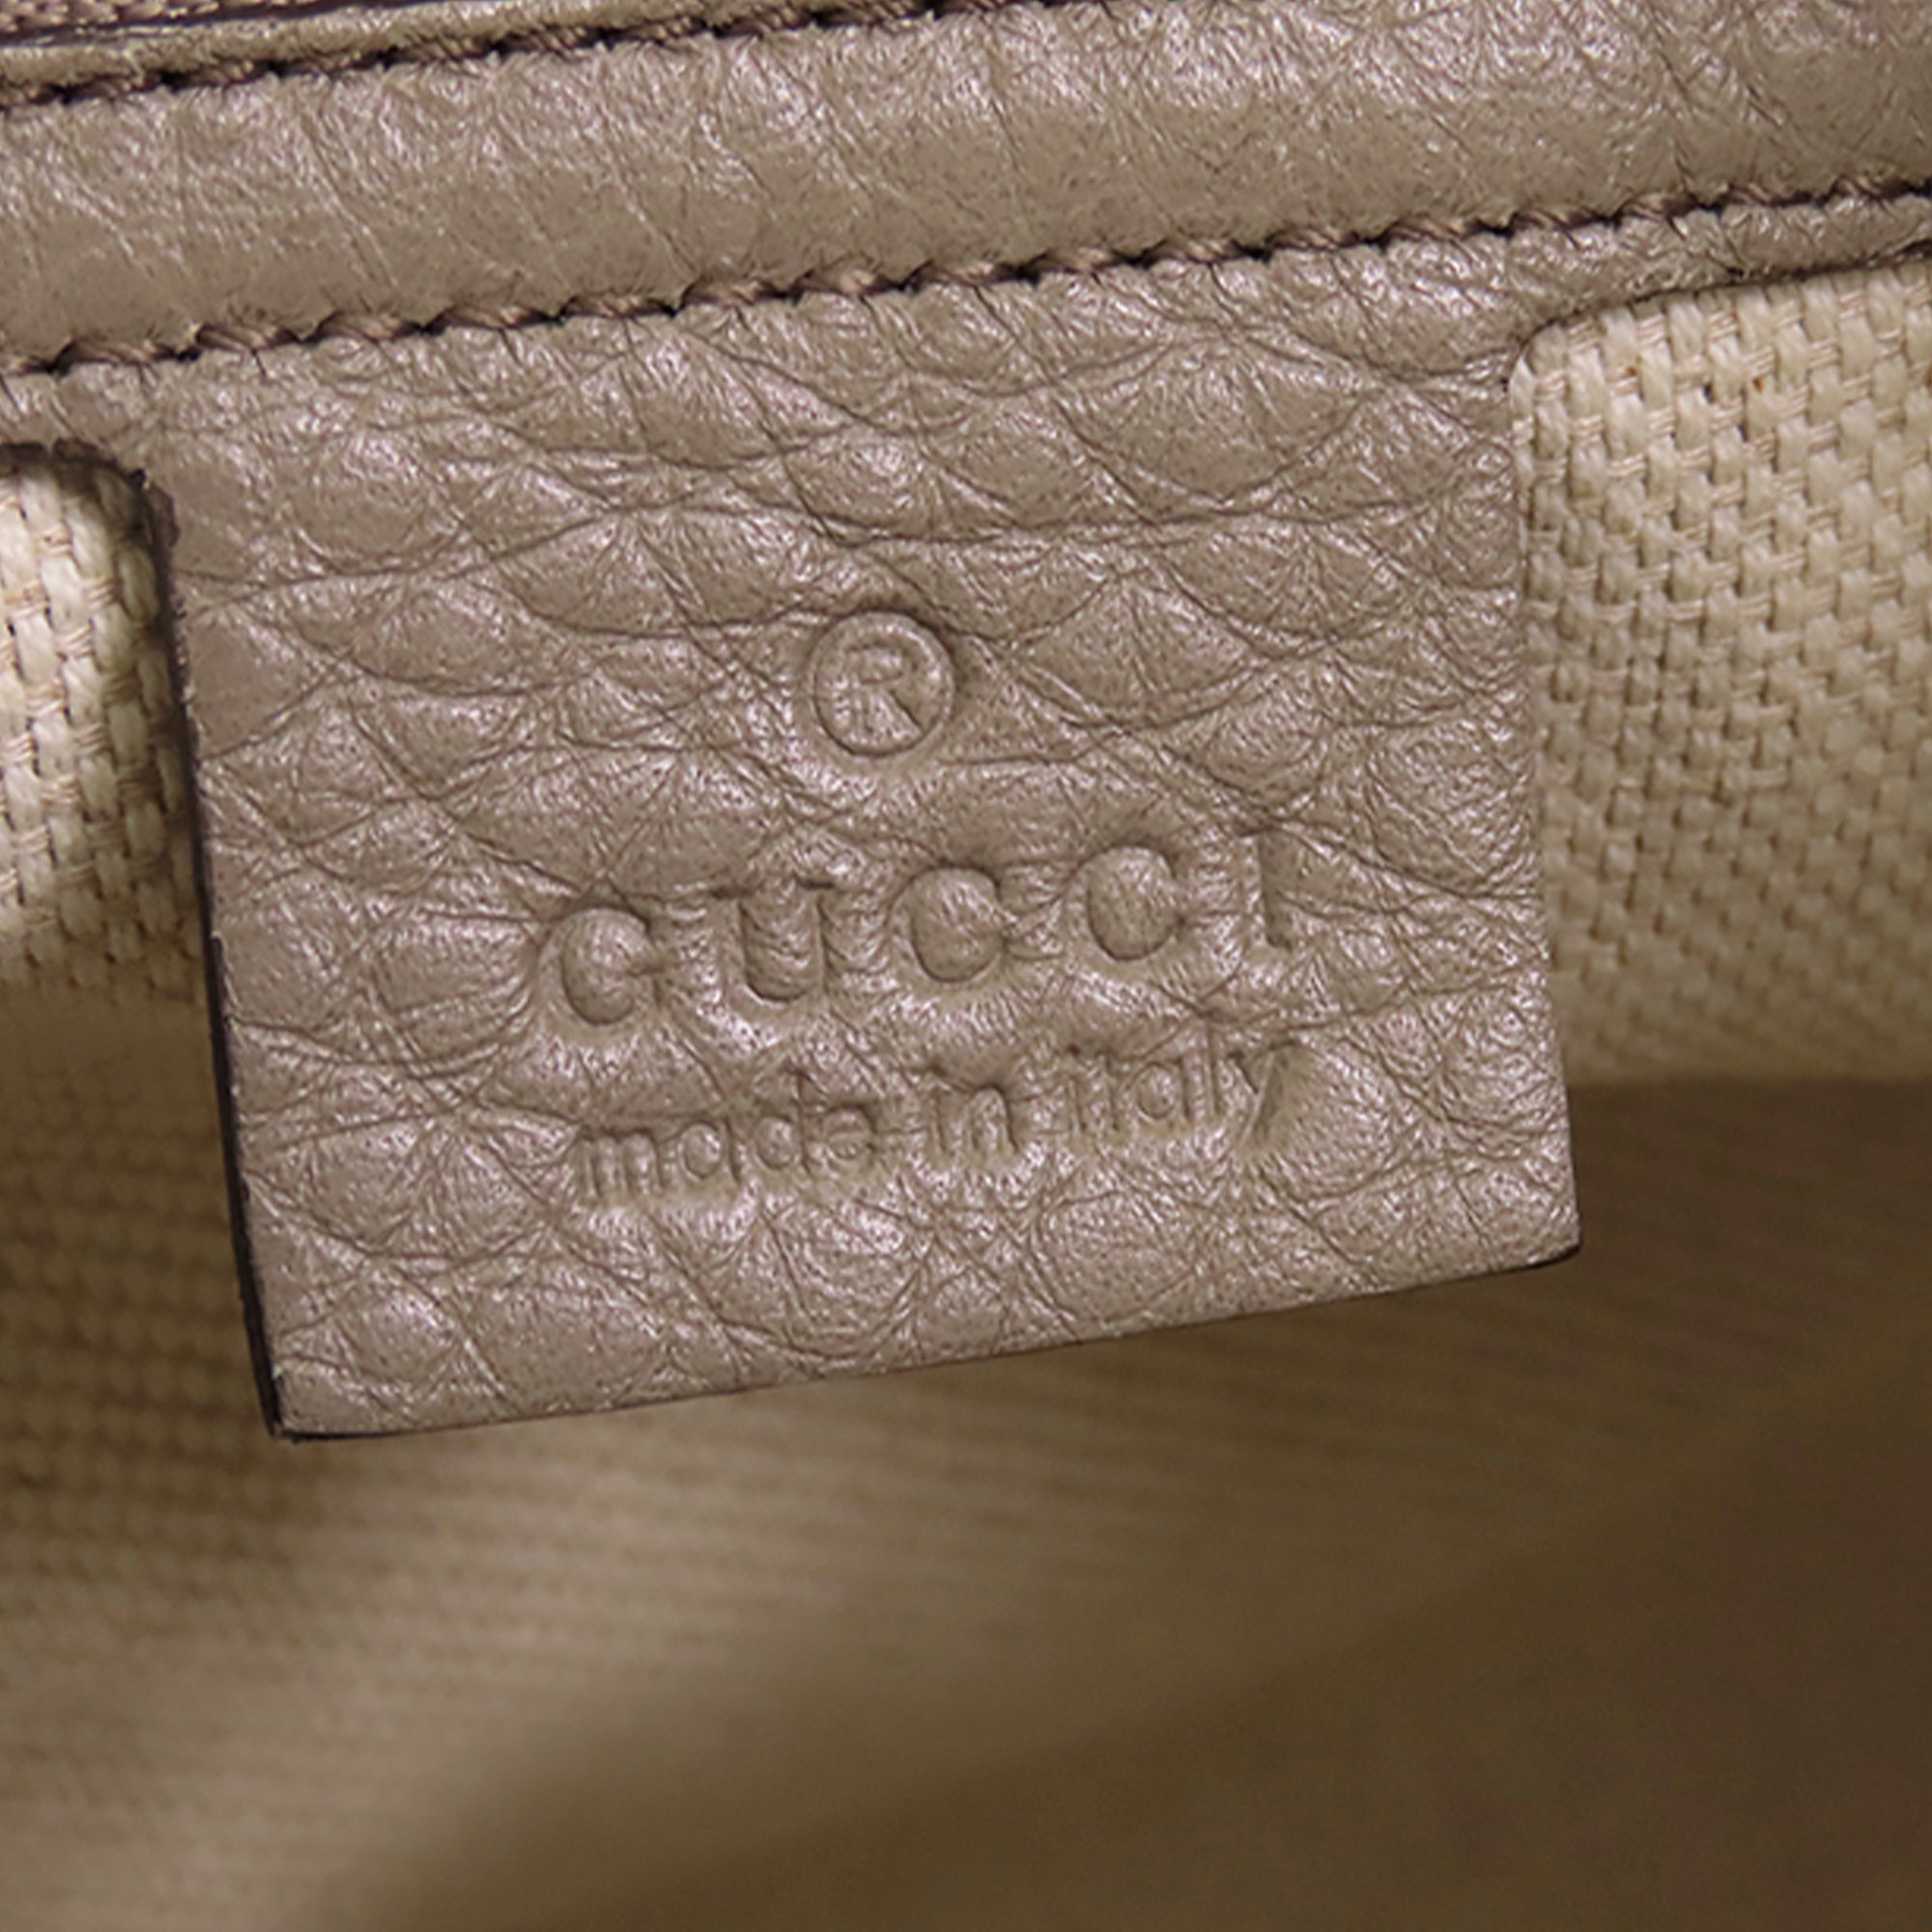 Gucci Soho Cellarius Tote Medium Brown Leather